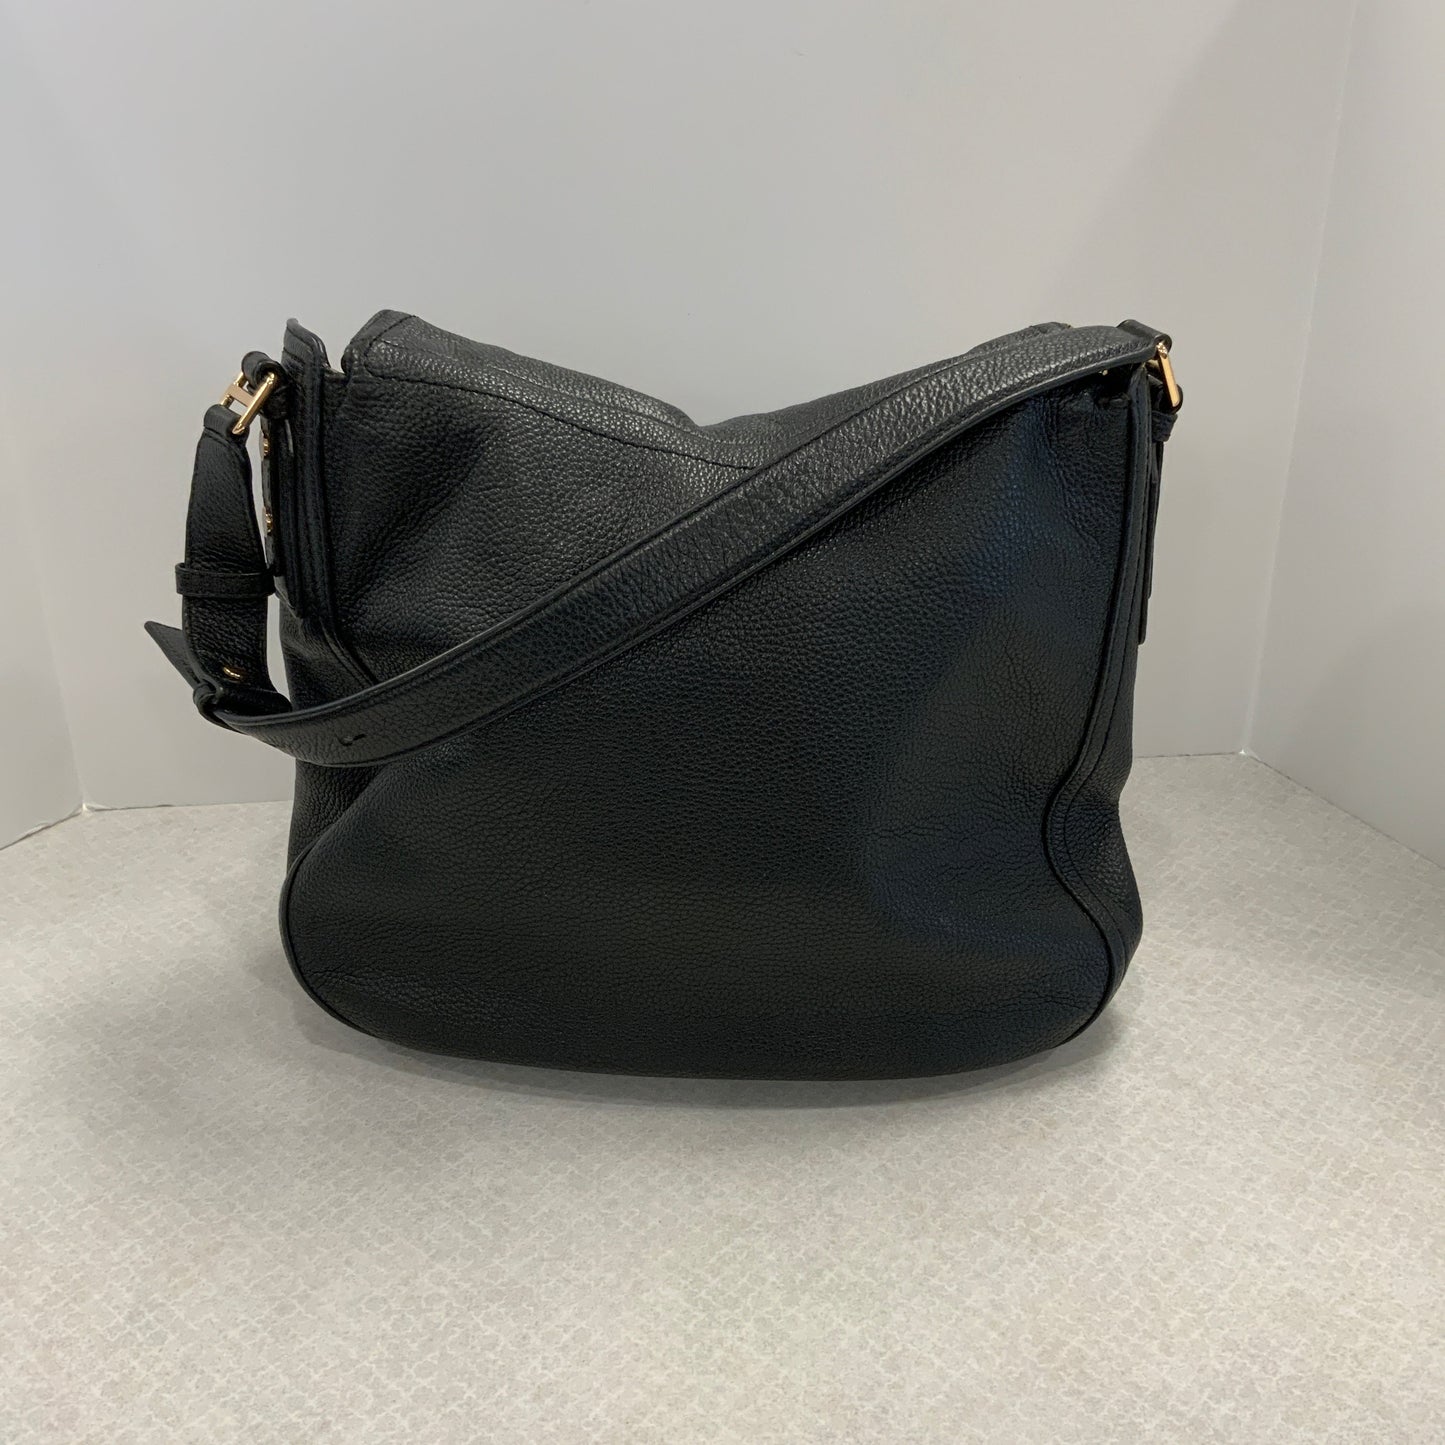 Handbag Designer Marc Jacobs, Size Large